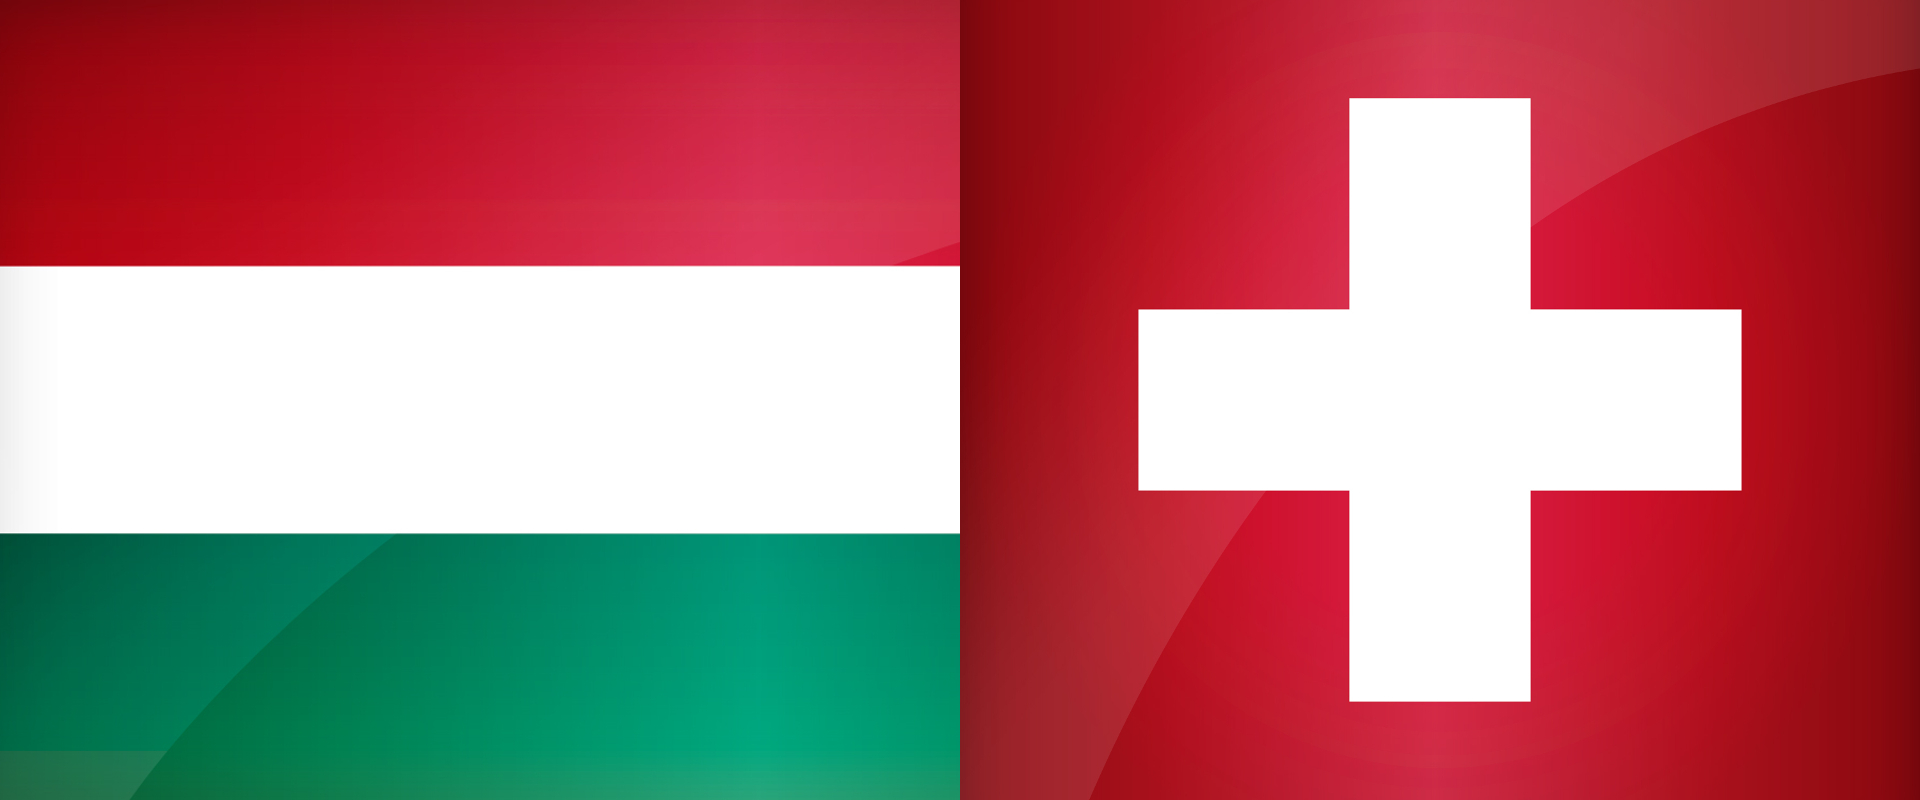 3 góllal köszönt be a svájciaknak a magyar FIFA válogatott - Videó